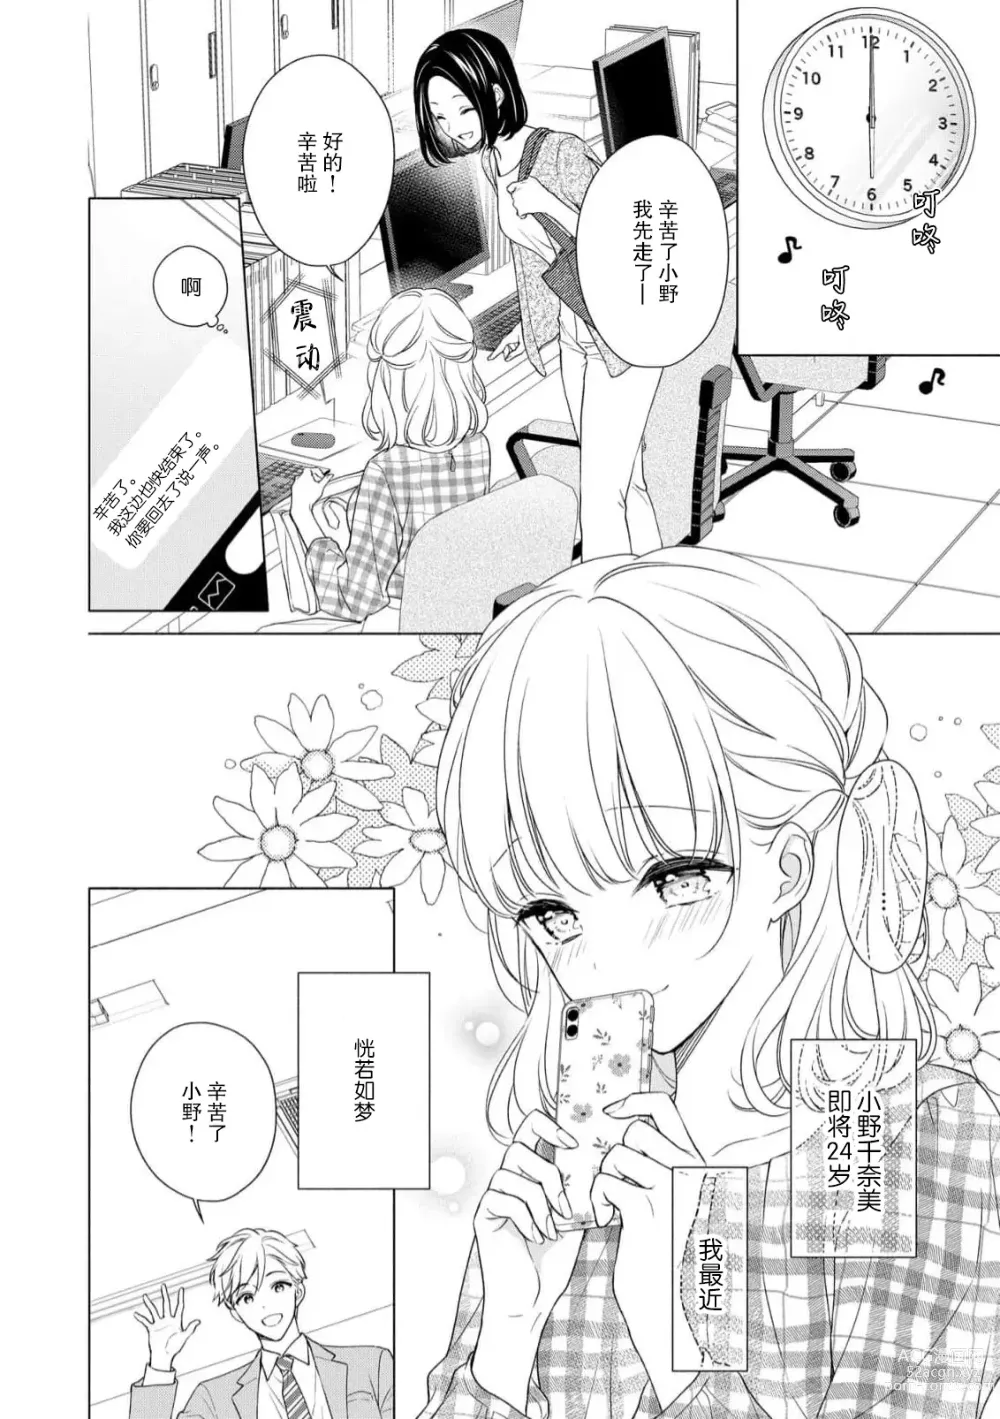 Page 3 of manga 宠爱社长贪恋我 ~用甘甜的毒将深处也融化~